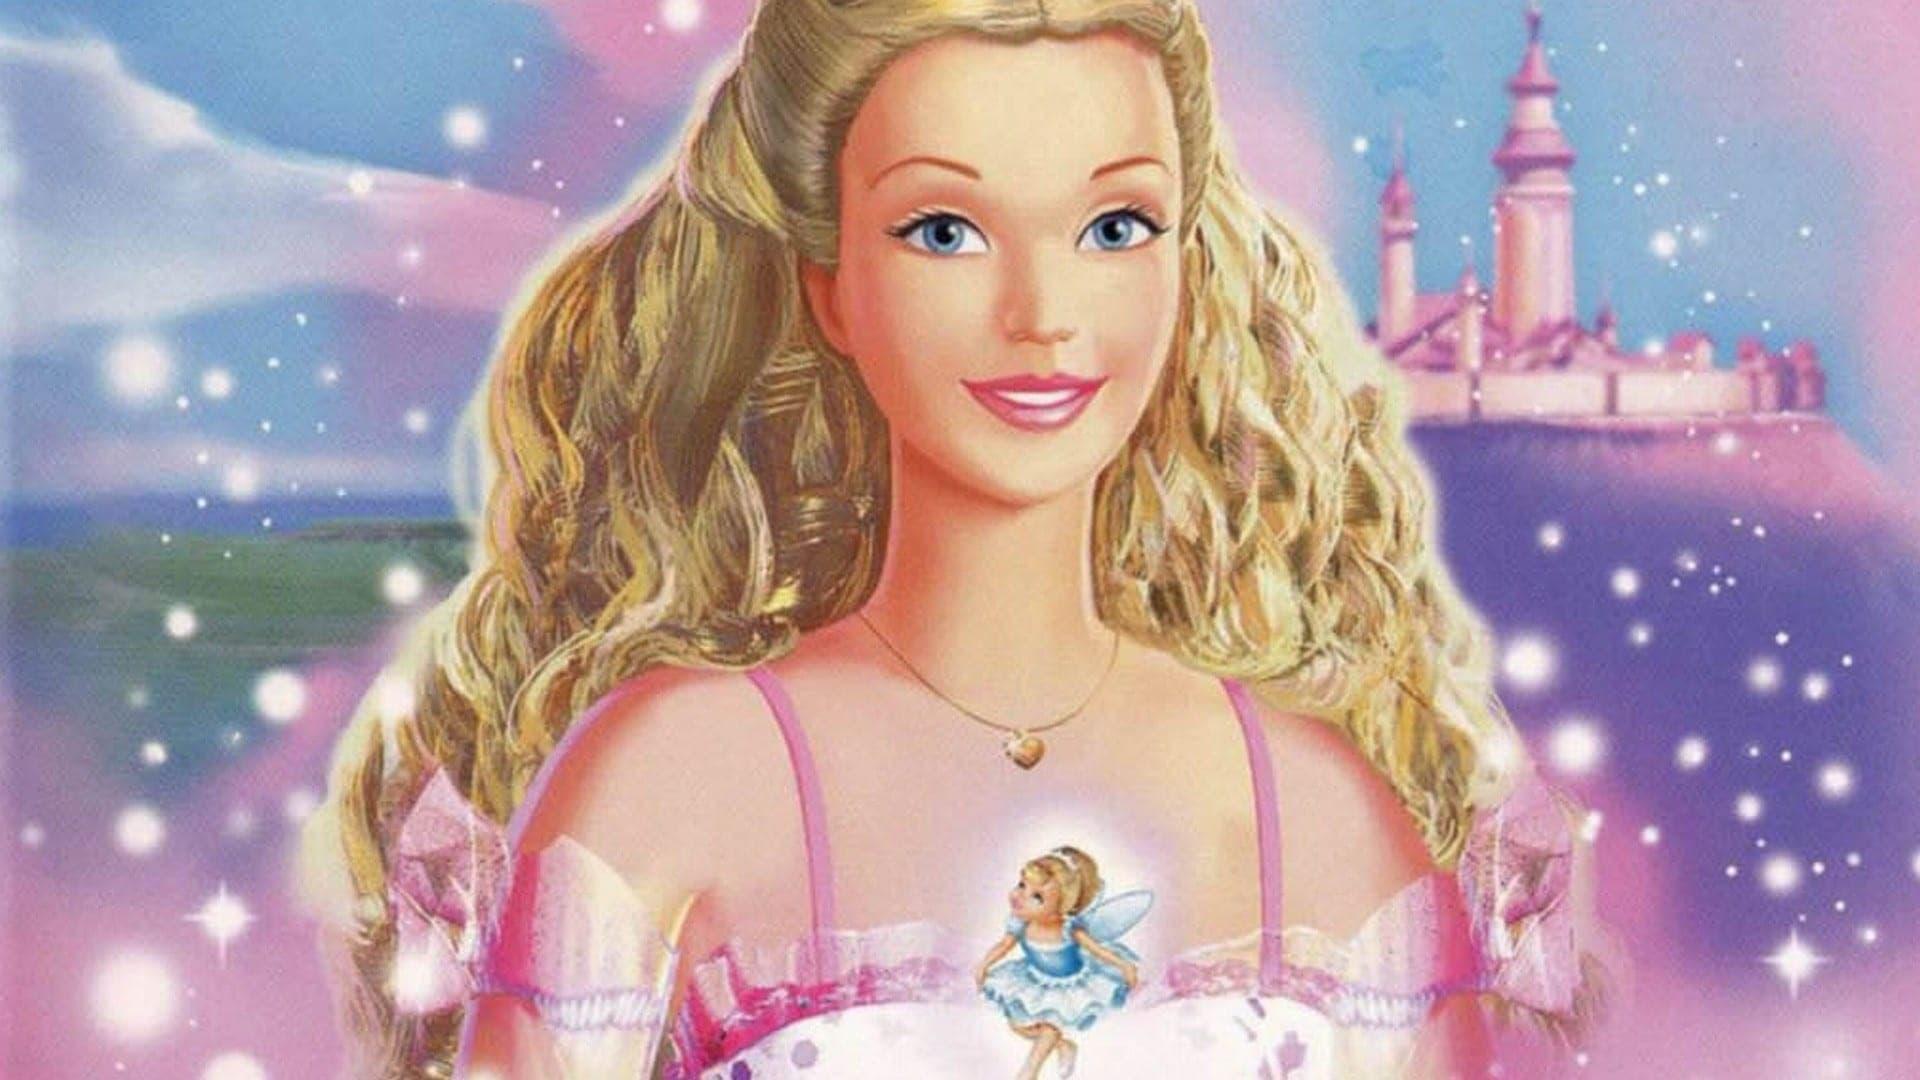 Barbie in the Nutcracker backdrop